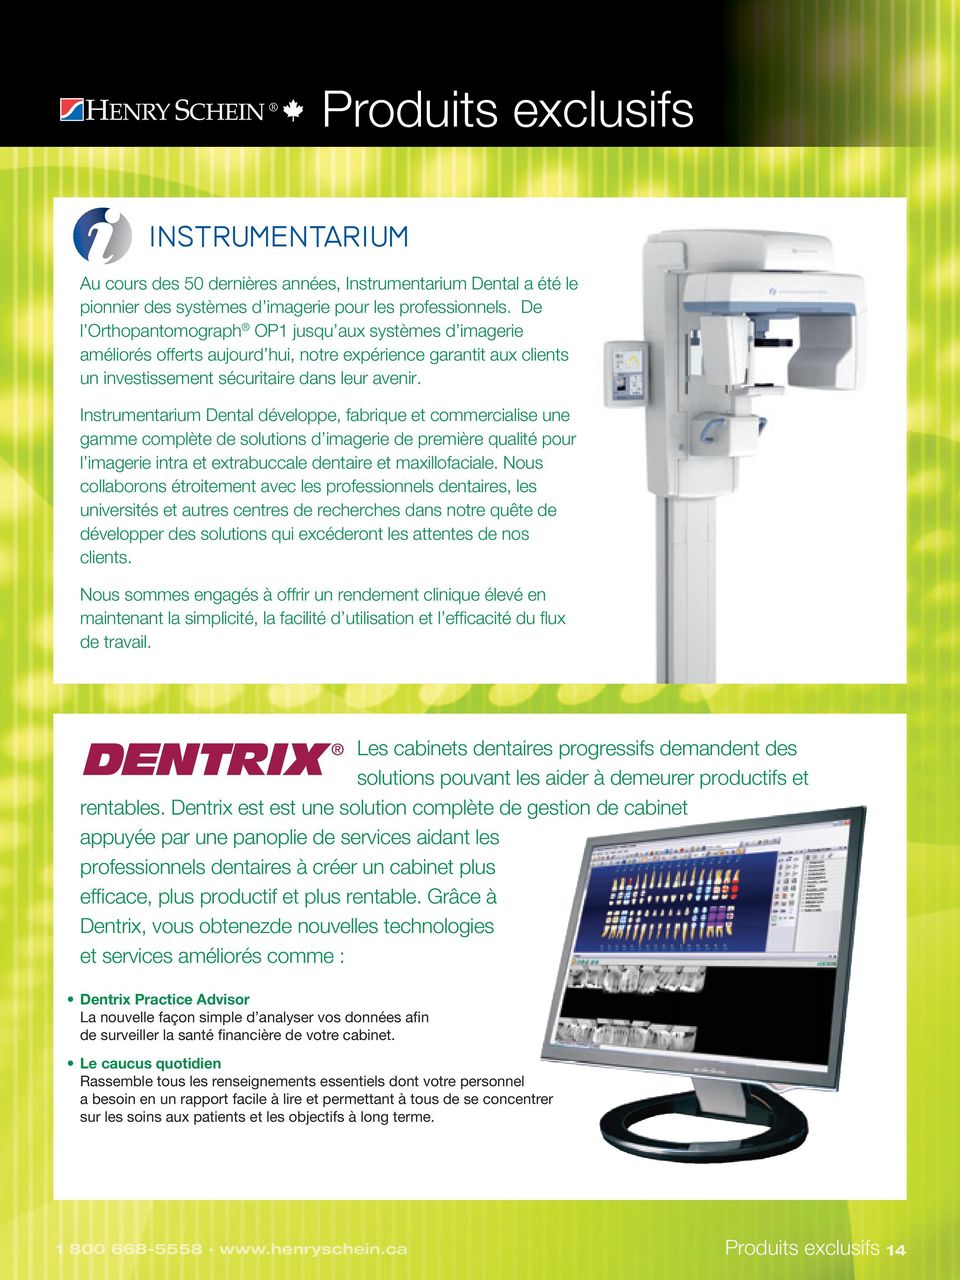 Instrumentarium Dental développe, fabrique et commercialise une gamme complète de solutions d imagerie de première qualité pour l imagerie intra et extrabuccale dentaire et maxillofaciale.